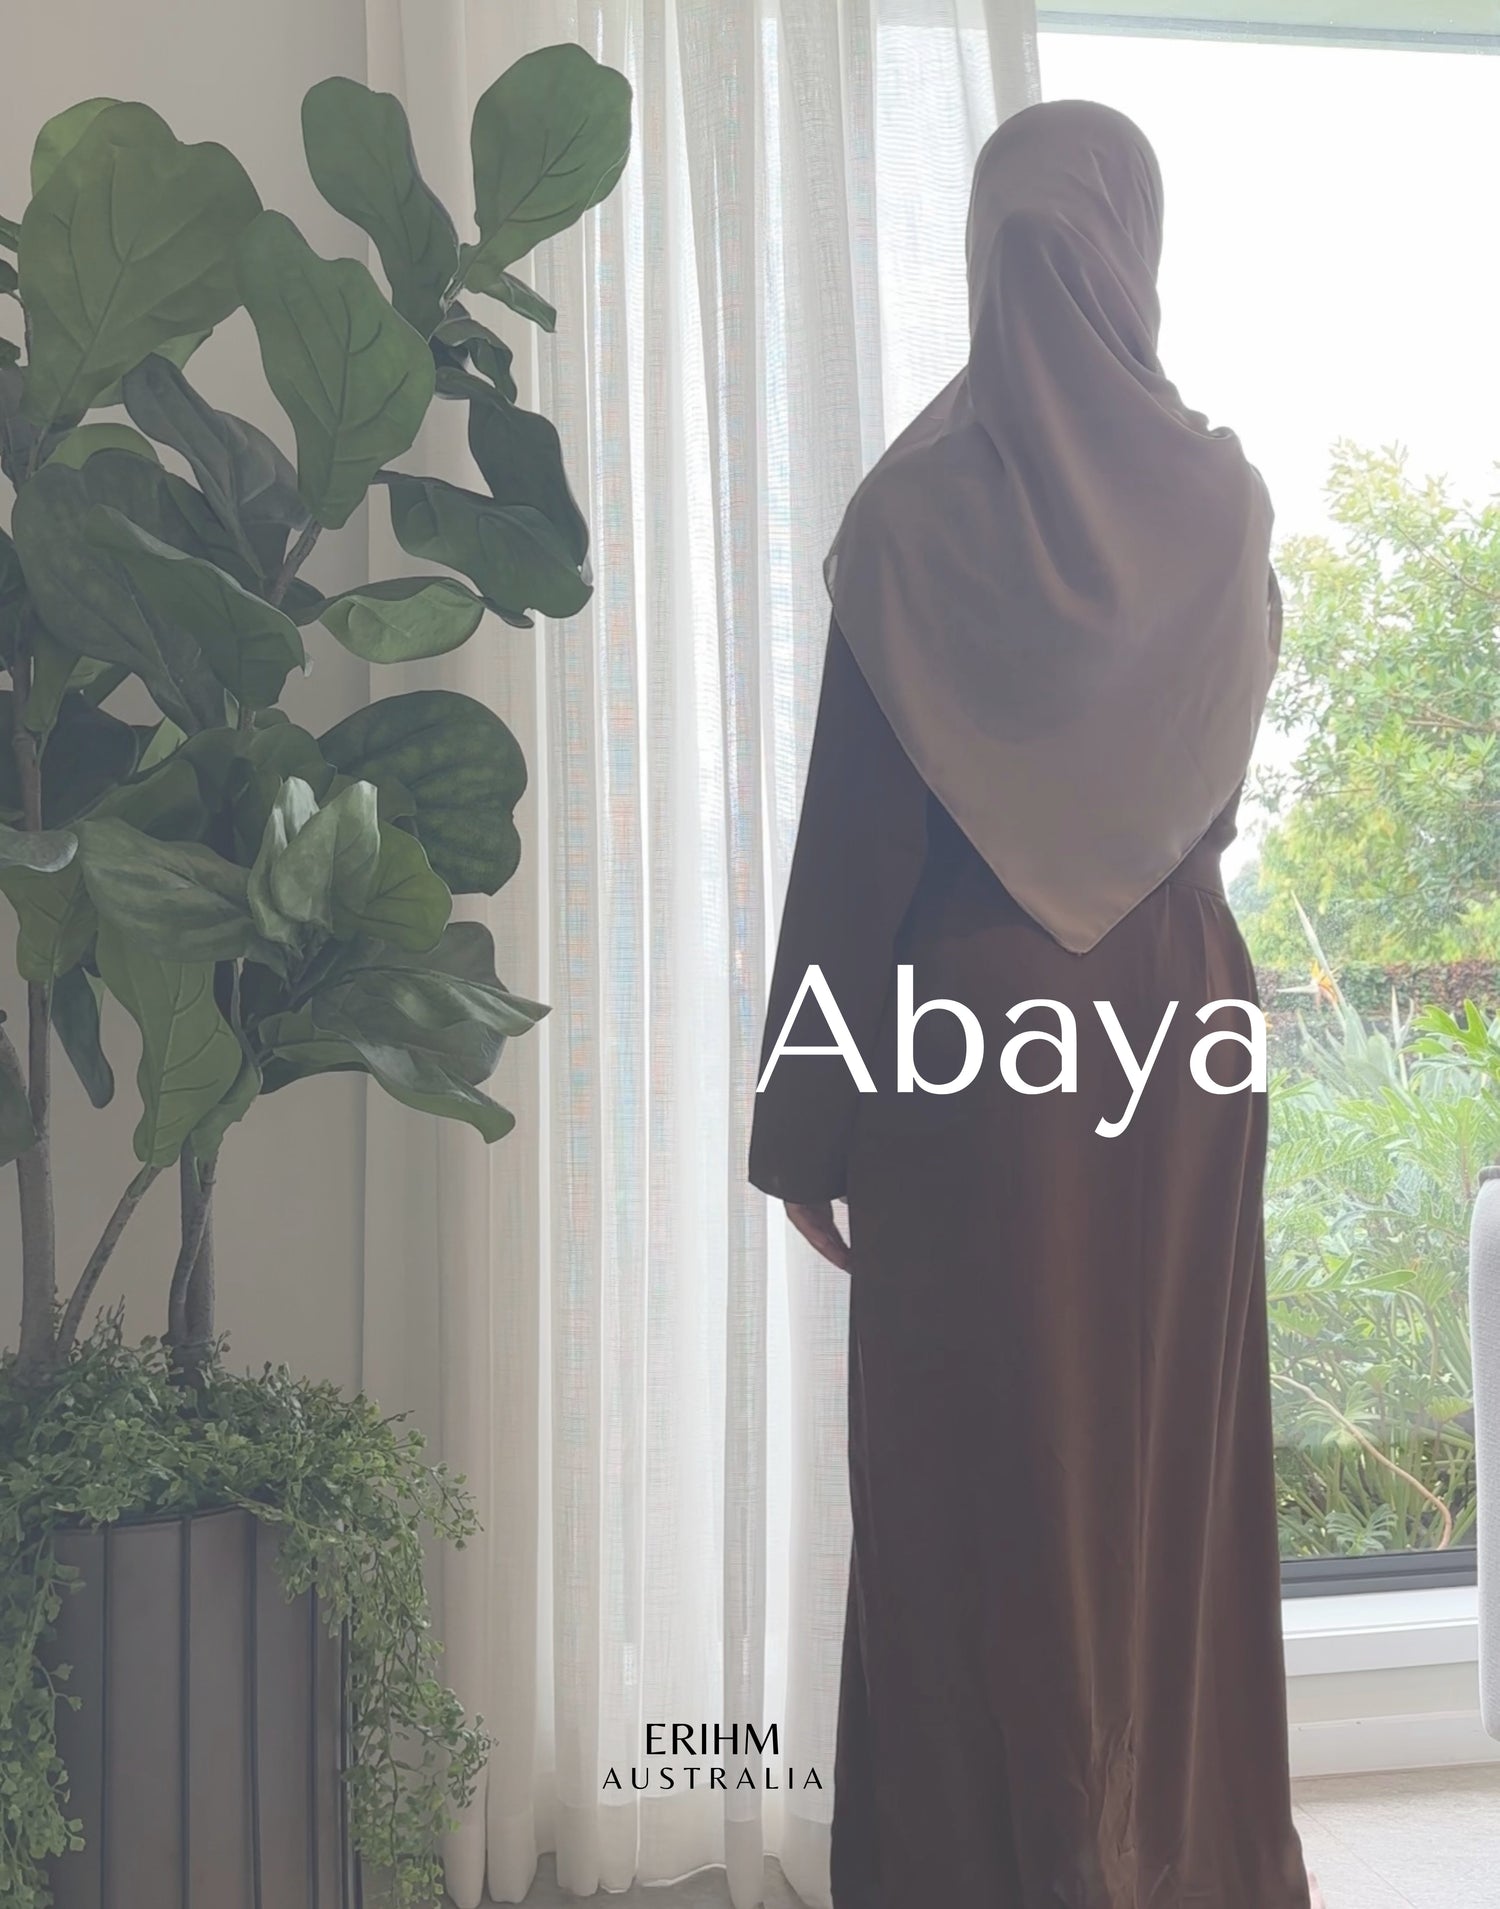 Abaya Collection